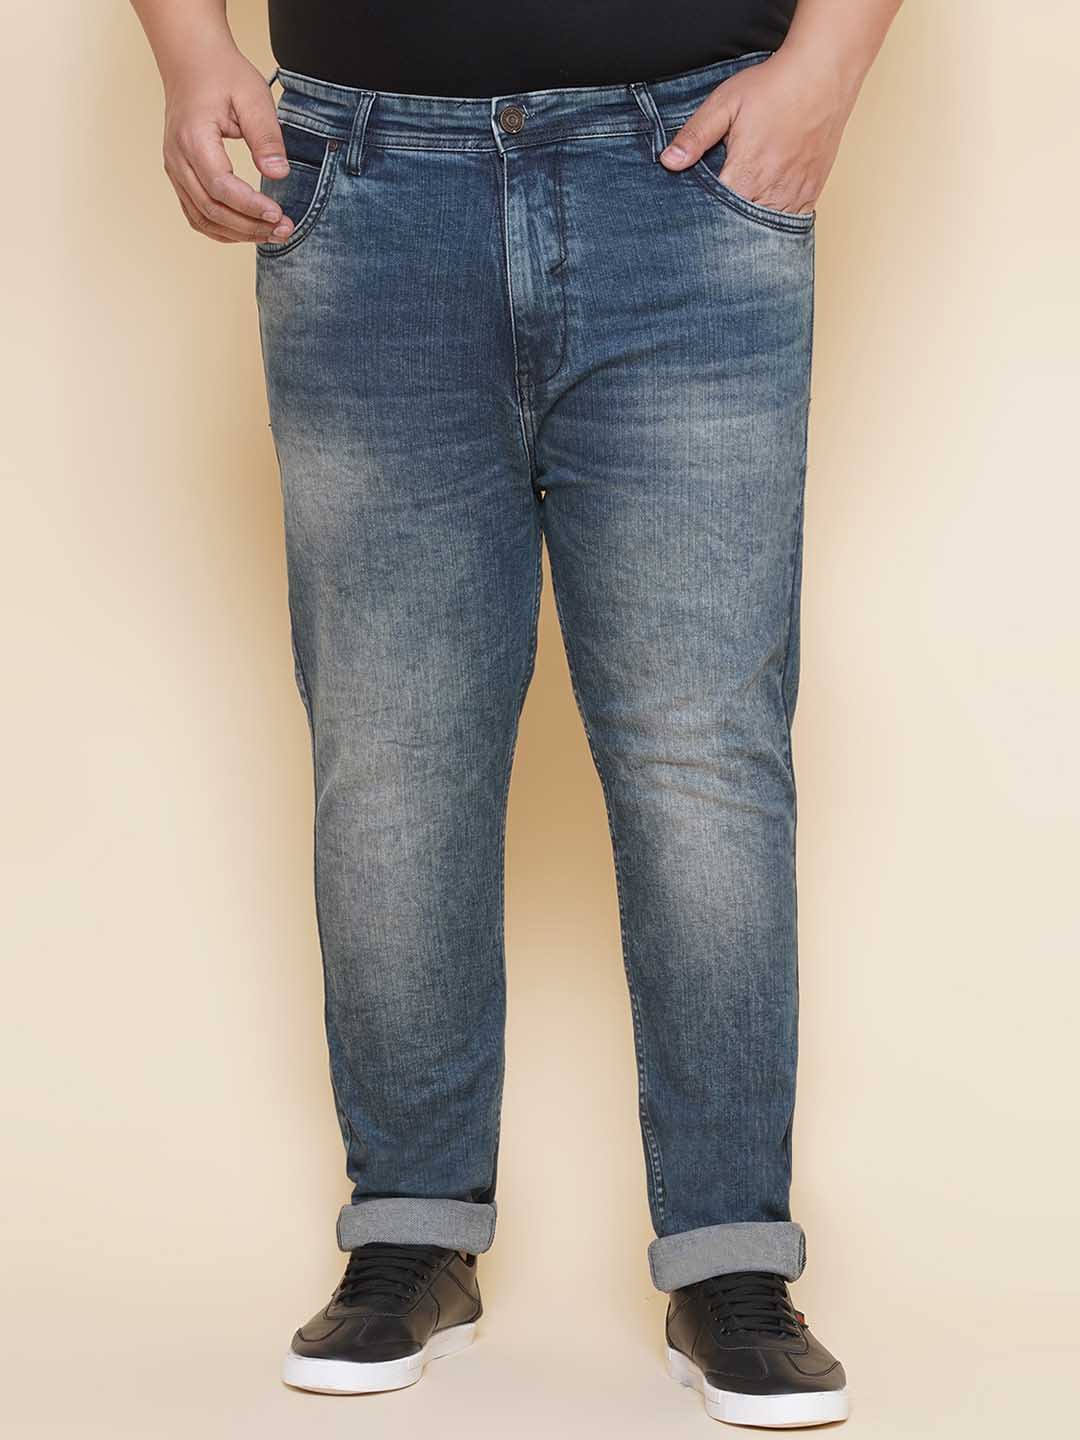 bottomwear/jeans/EJPJ25139/ejpj25139-1.jpg